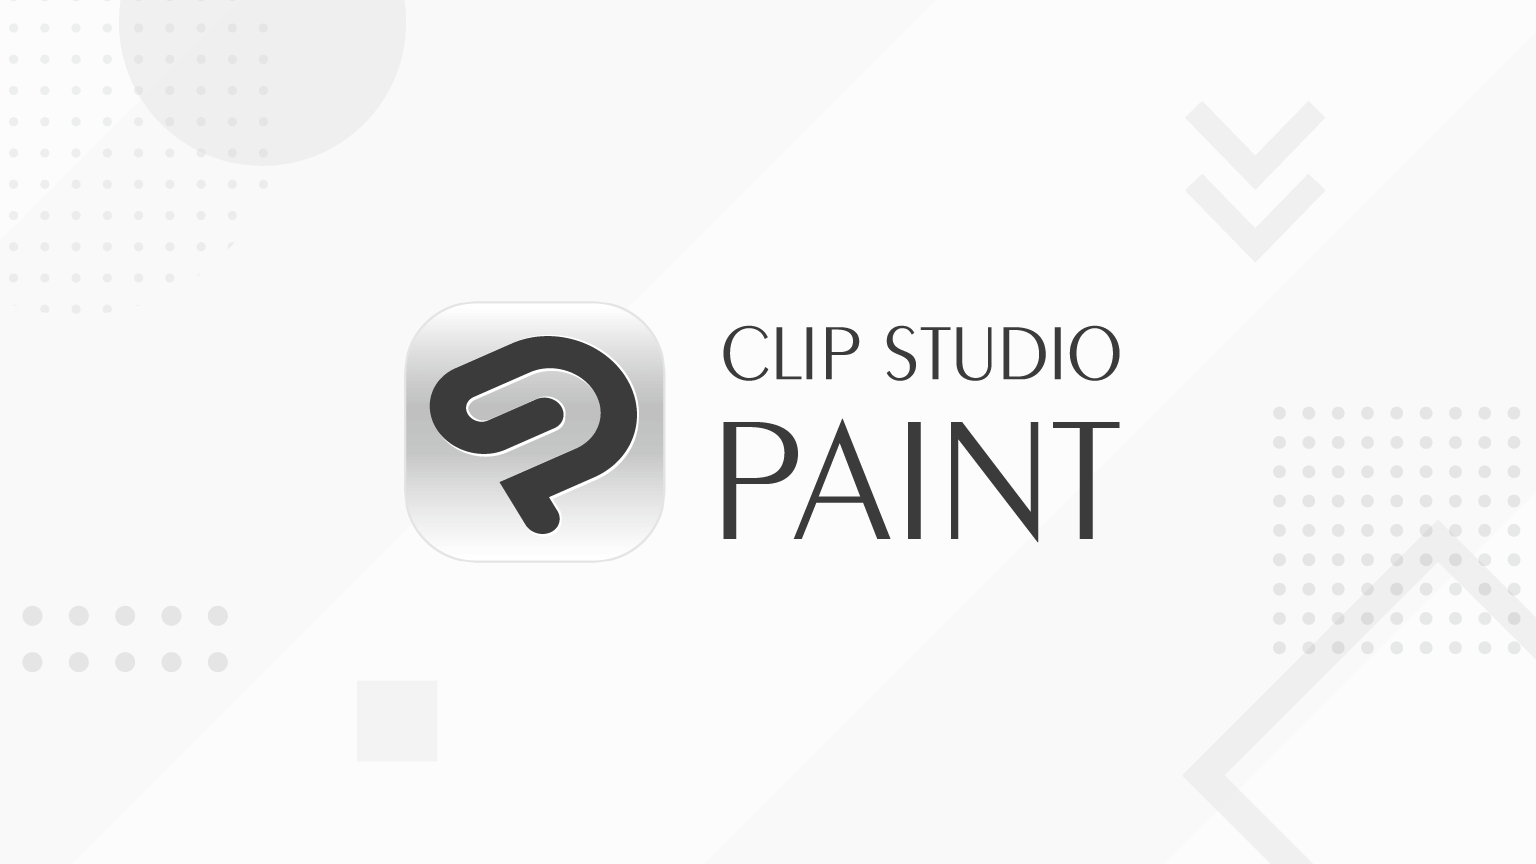 clip studio paint 3 months free